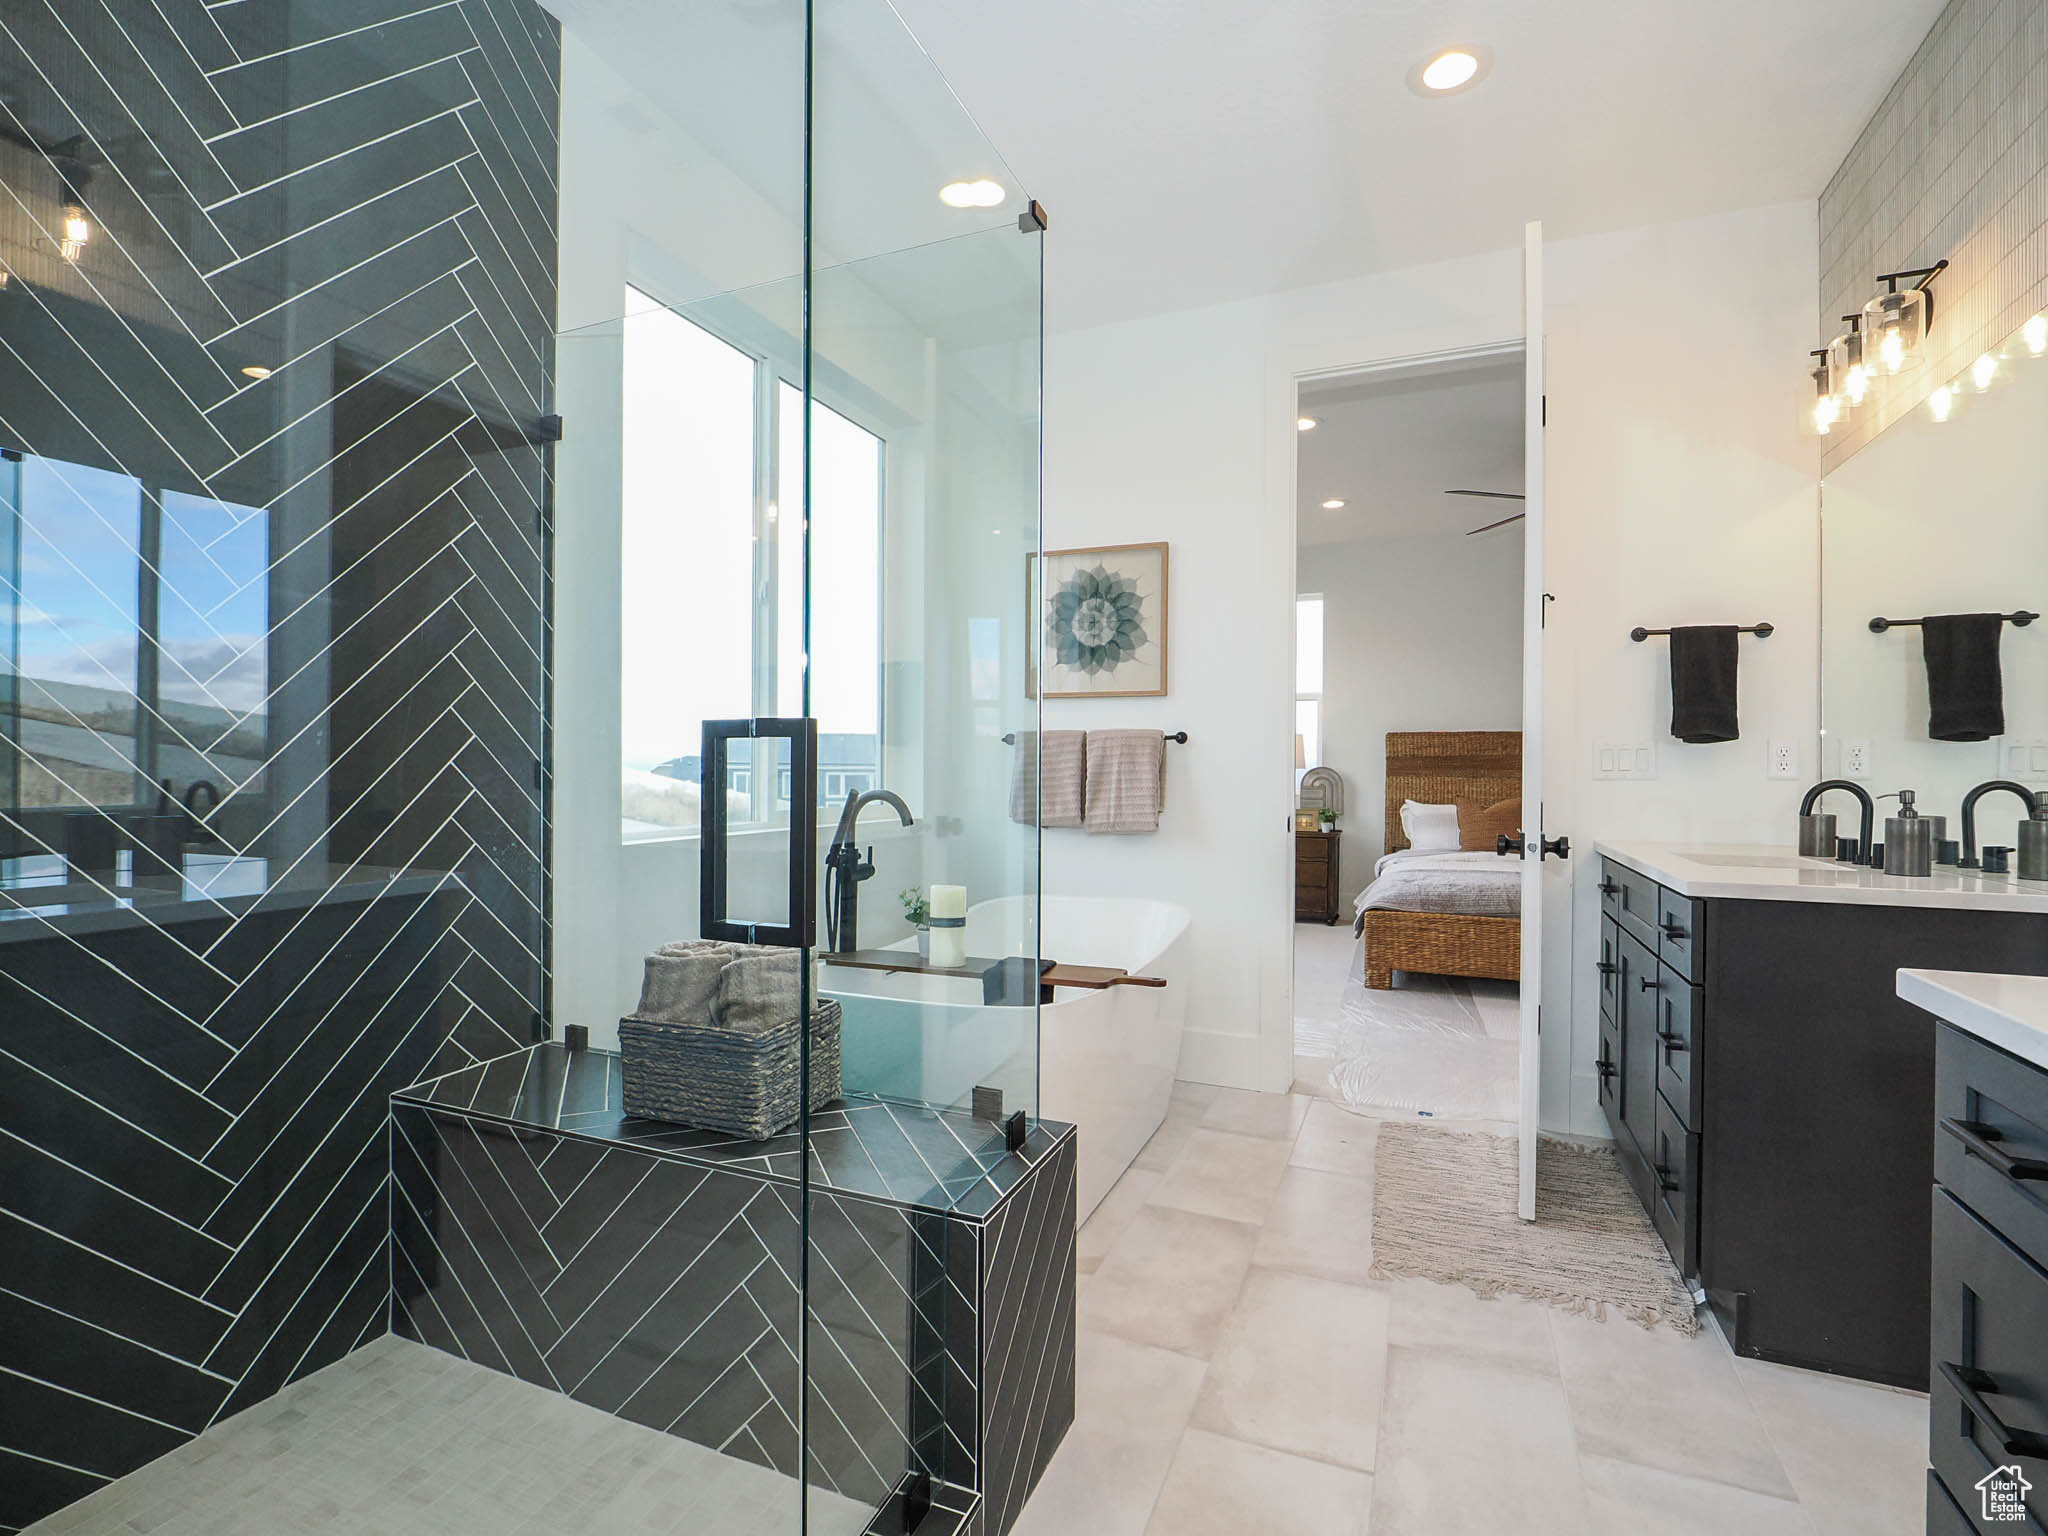 Bathroom featuring vanity, tile floors, and ceiling fan